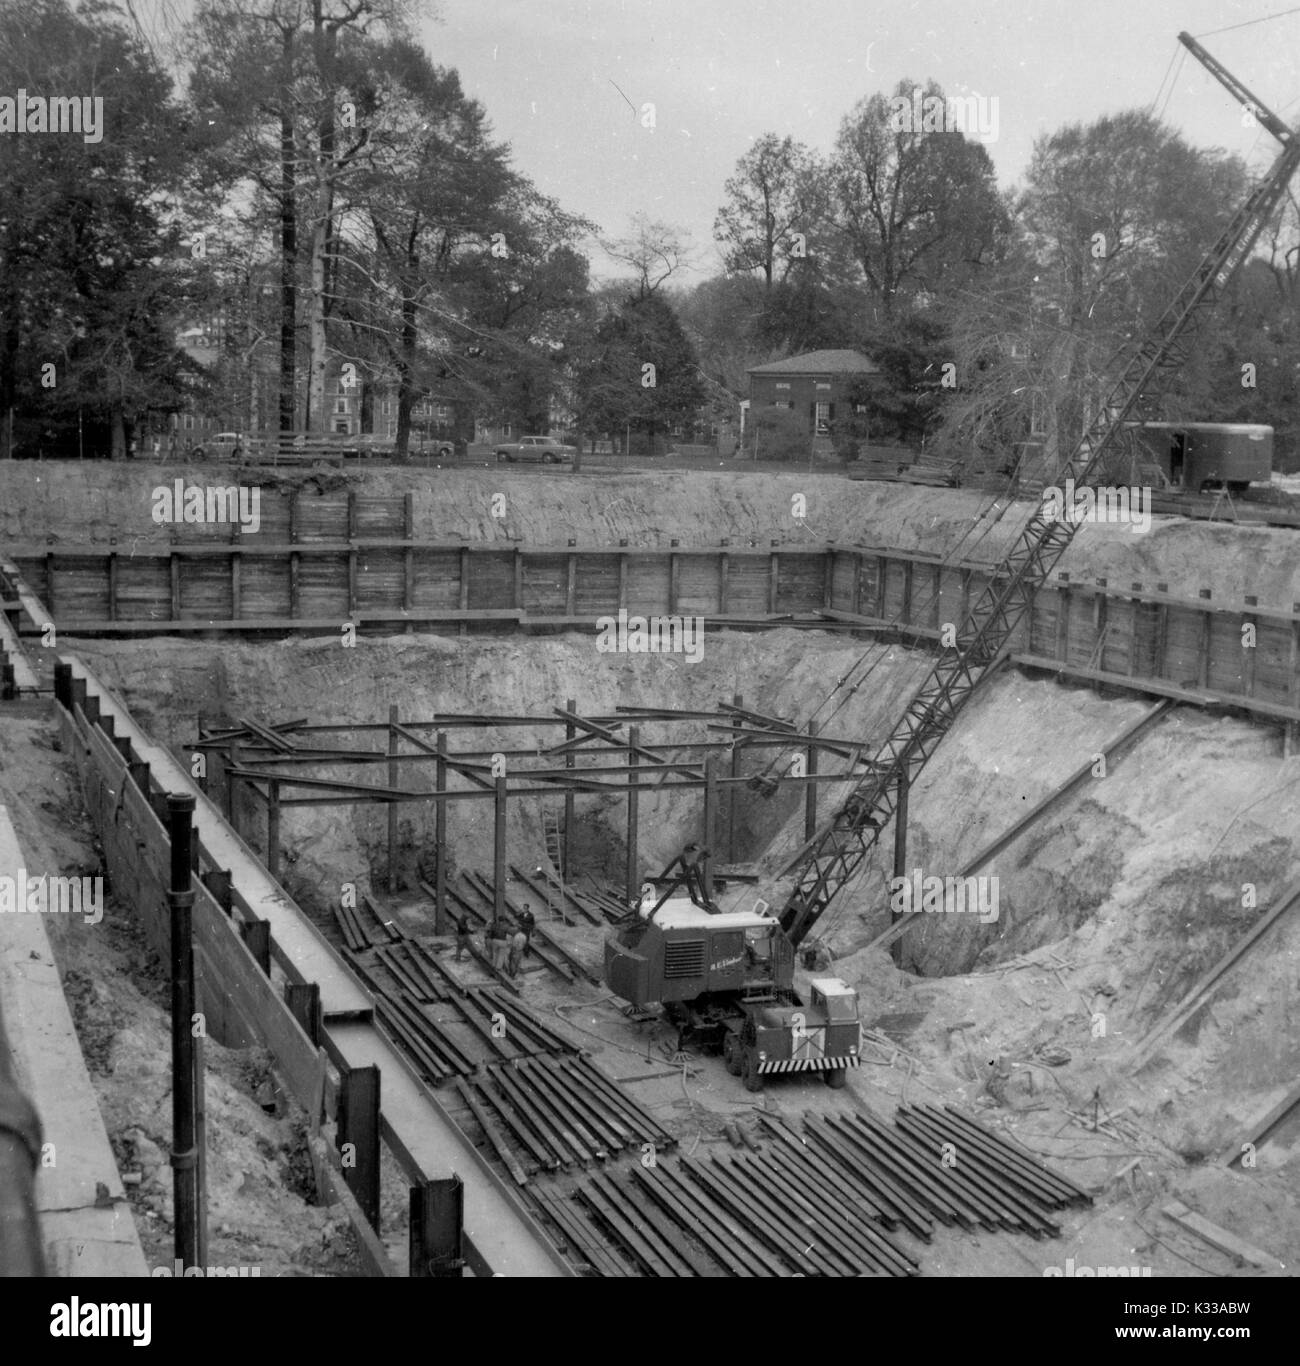 In den frühen Phasen der Konstruktion der Milton S Eisenhower Bibliothek an der Johns Hopkins University, Stahl Arbeit ist in das Fundament des Gebäudes verlegt, mit Bäumen und Campus Gebäude angrenzend an das Projekt Boden, Baltimore, Maryland, Mai, 1962. Stockfoto